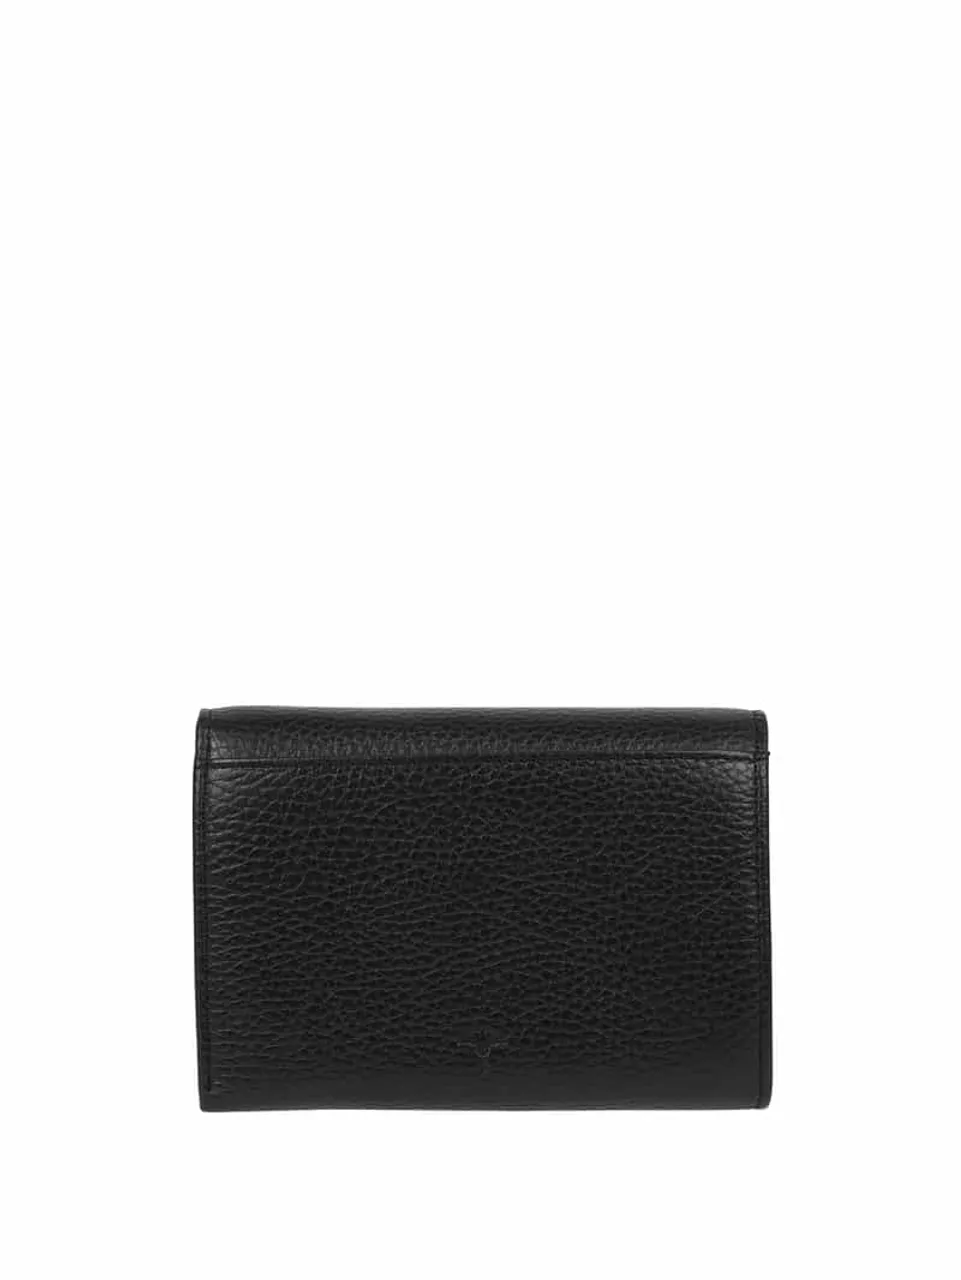 JOOP! Portemonnaie in Leder-Optik Modell 'Chiara' - RFID-blocking in Black, Größe One Size